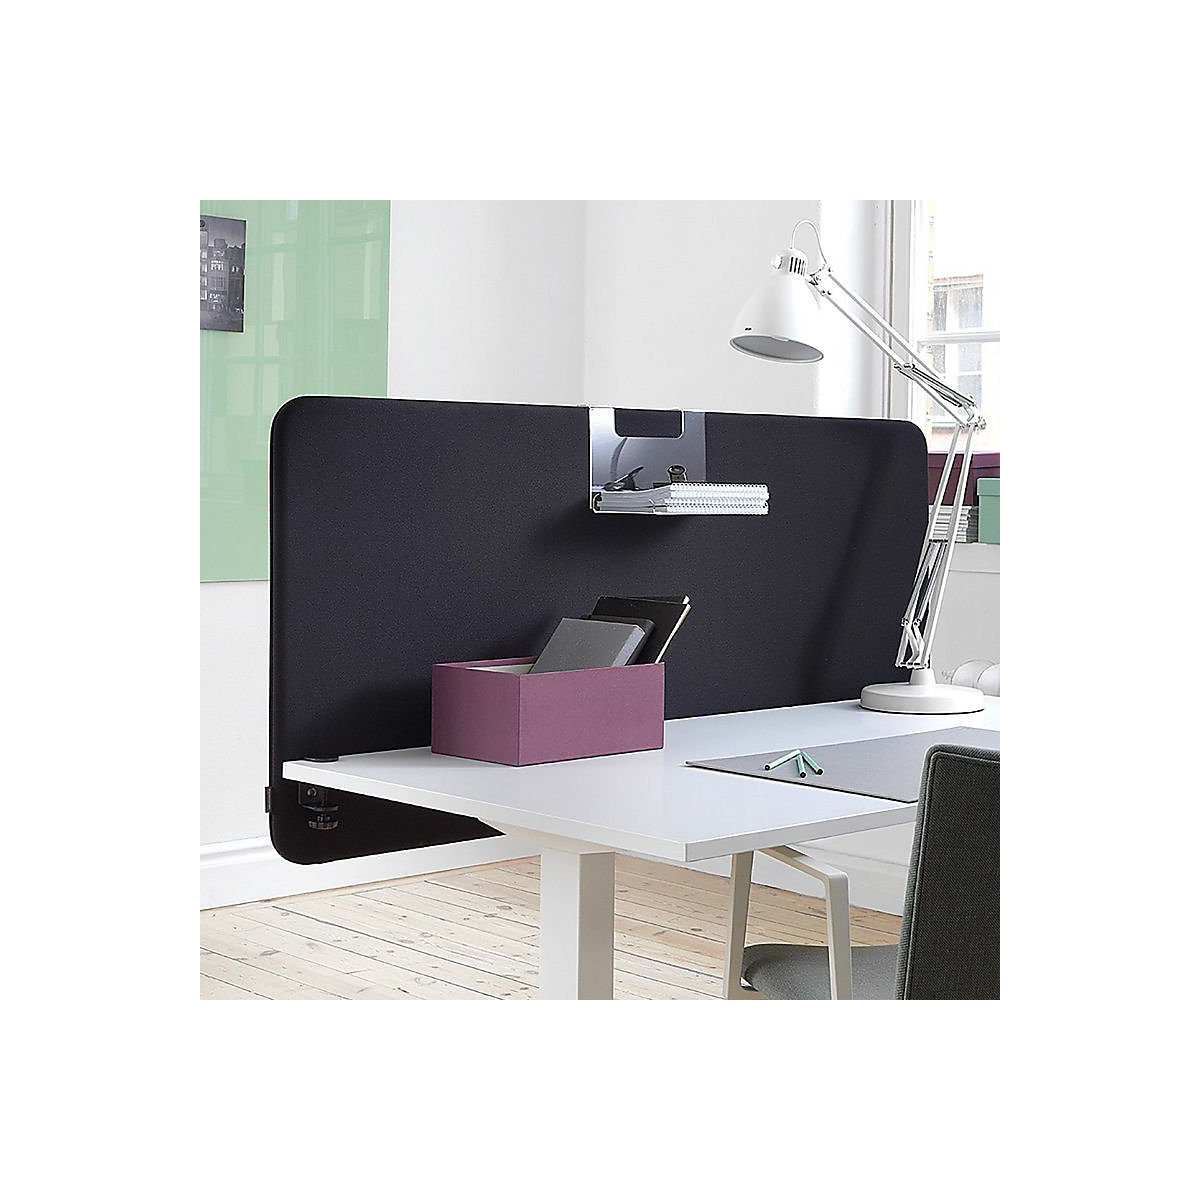 Standard acoustic desk partition